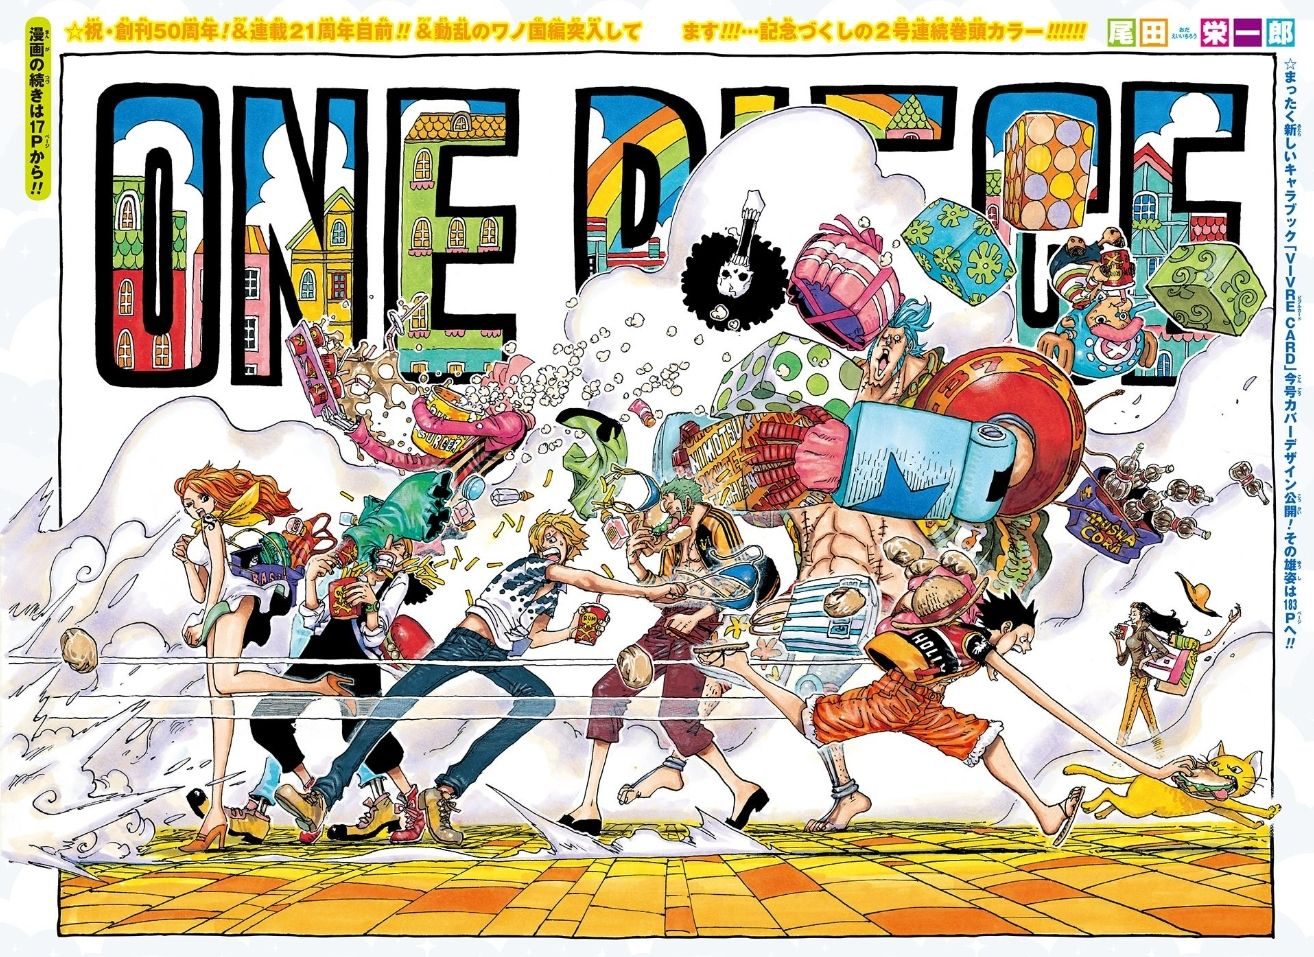 Chapitre 911 One Piece Encyclopedie Fandom